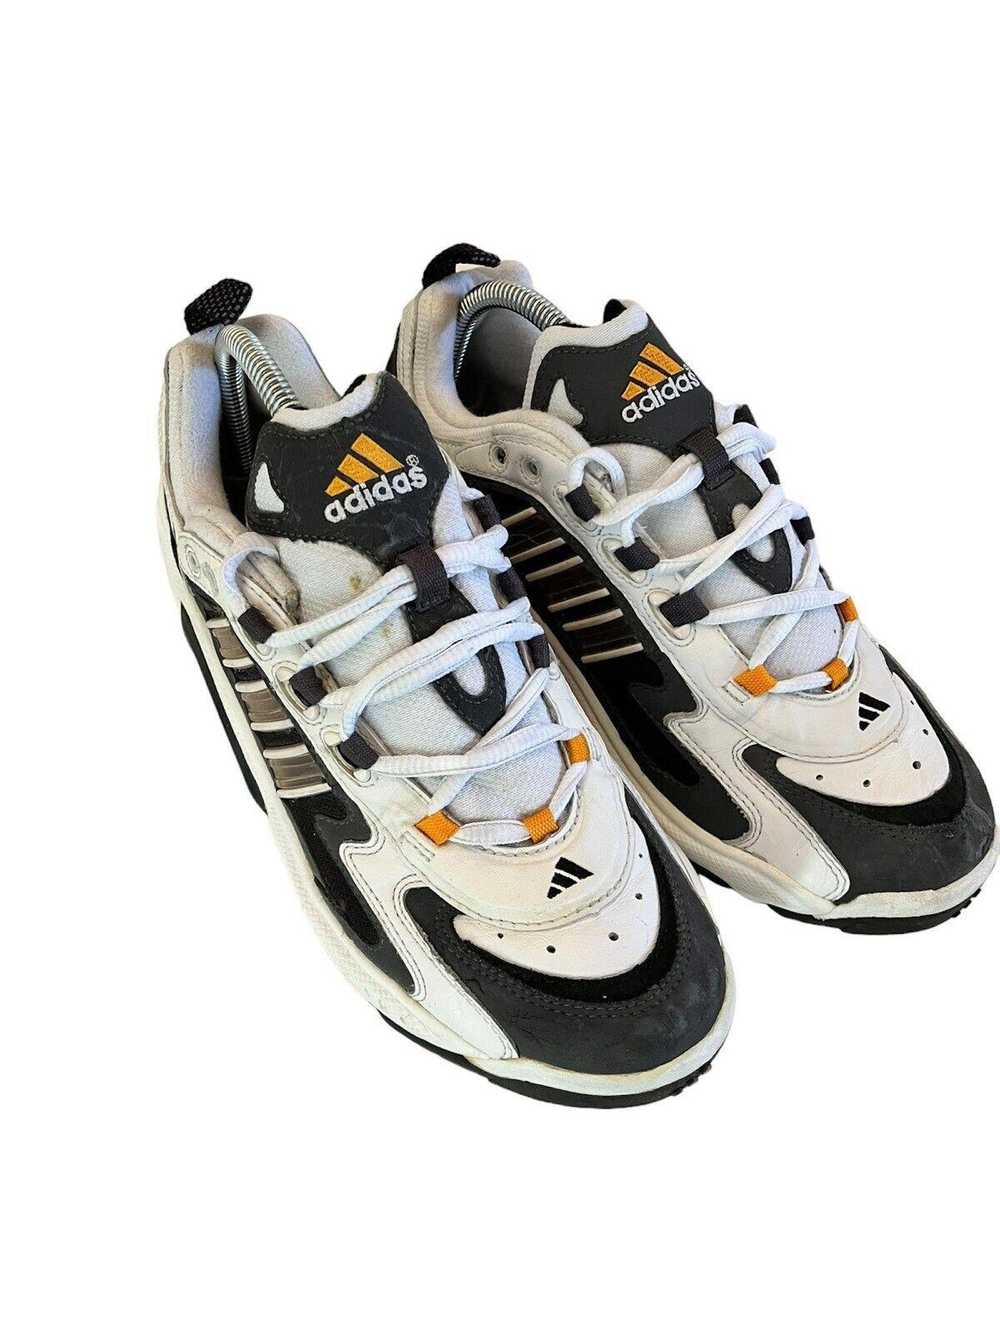 Adidas 1998 Vintage Adidas White Black Running Sh… - image 3